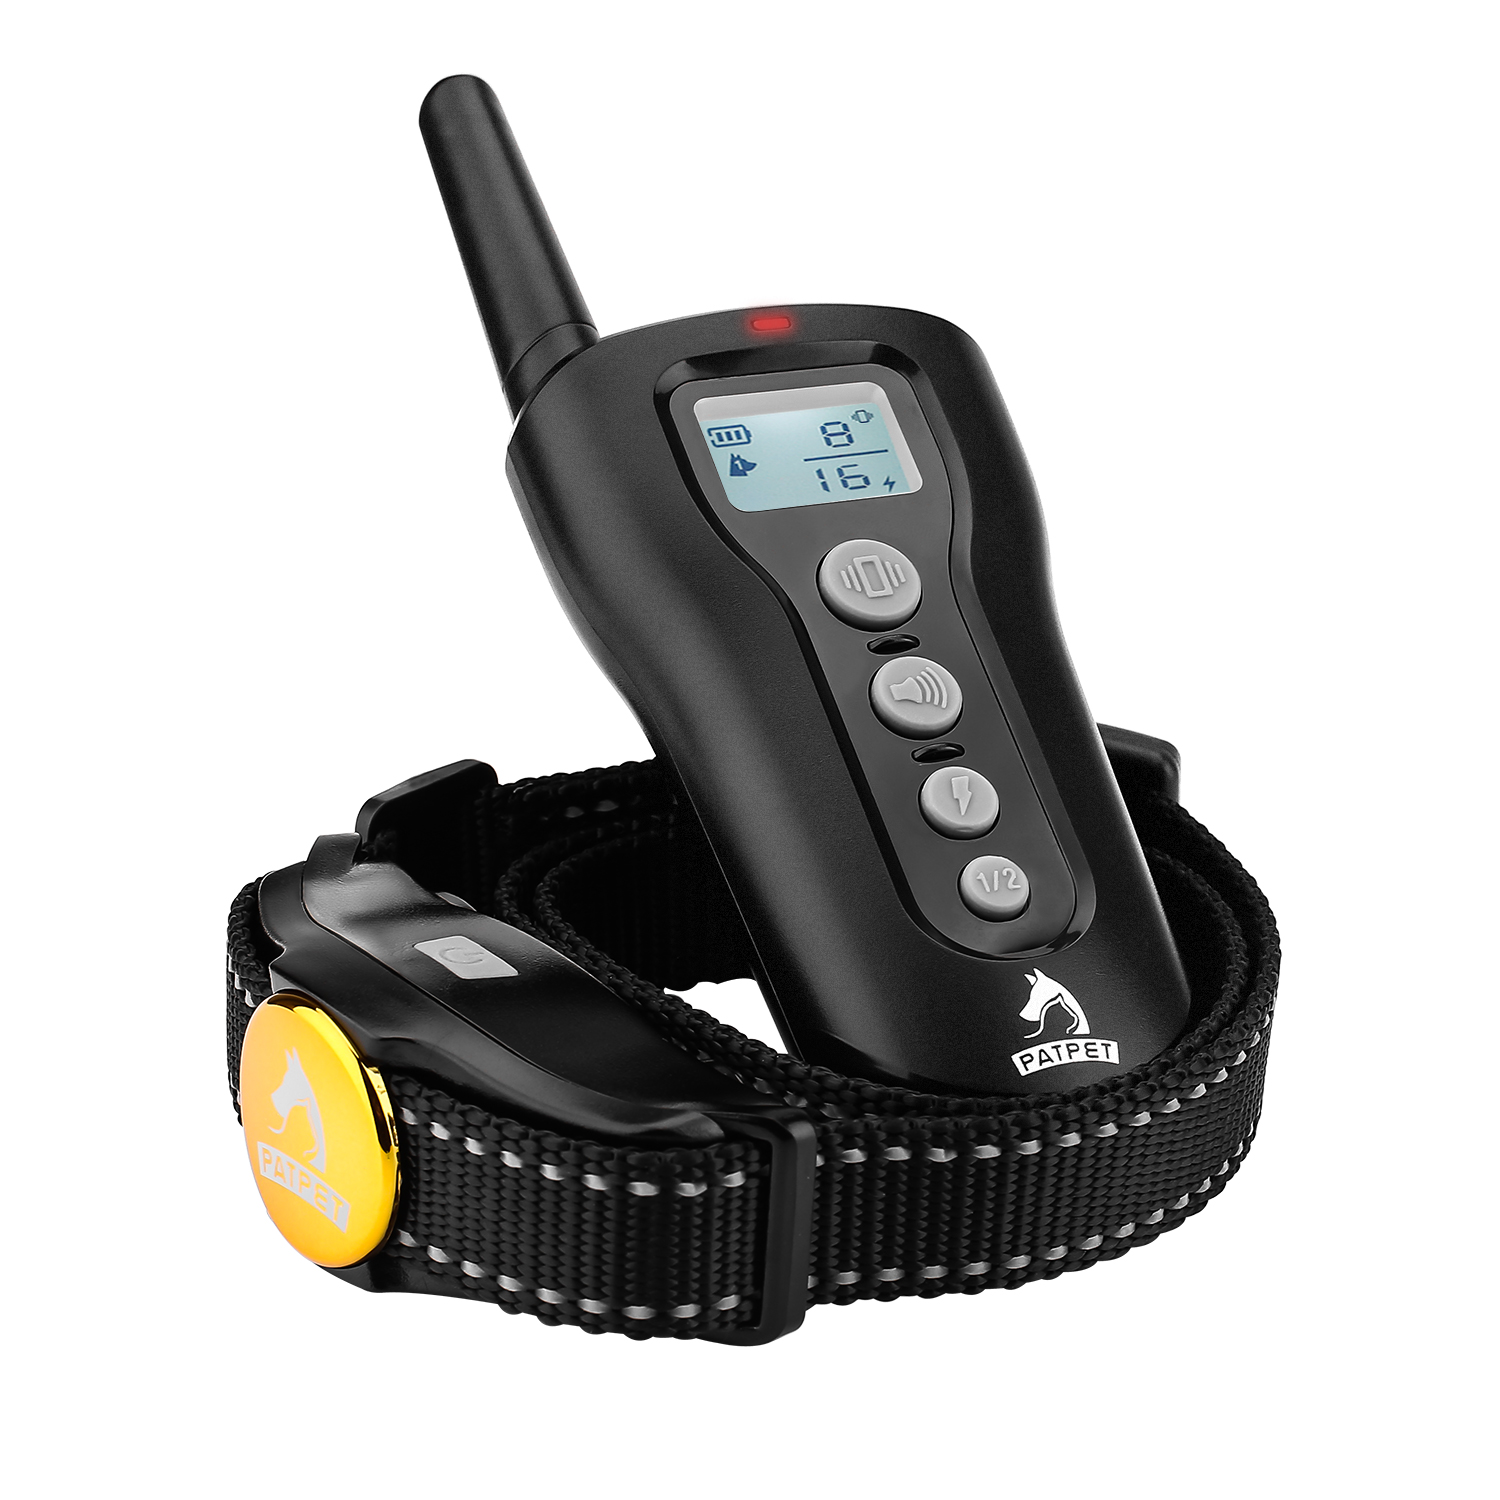 

PATPET P-collar 320 EU Plug Собака Тренировочный ошейник Инновационная слепая операция Shock Collar Pet Trainer